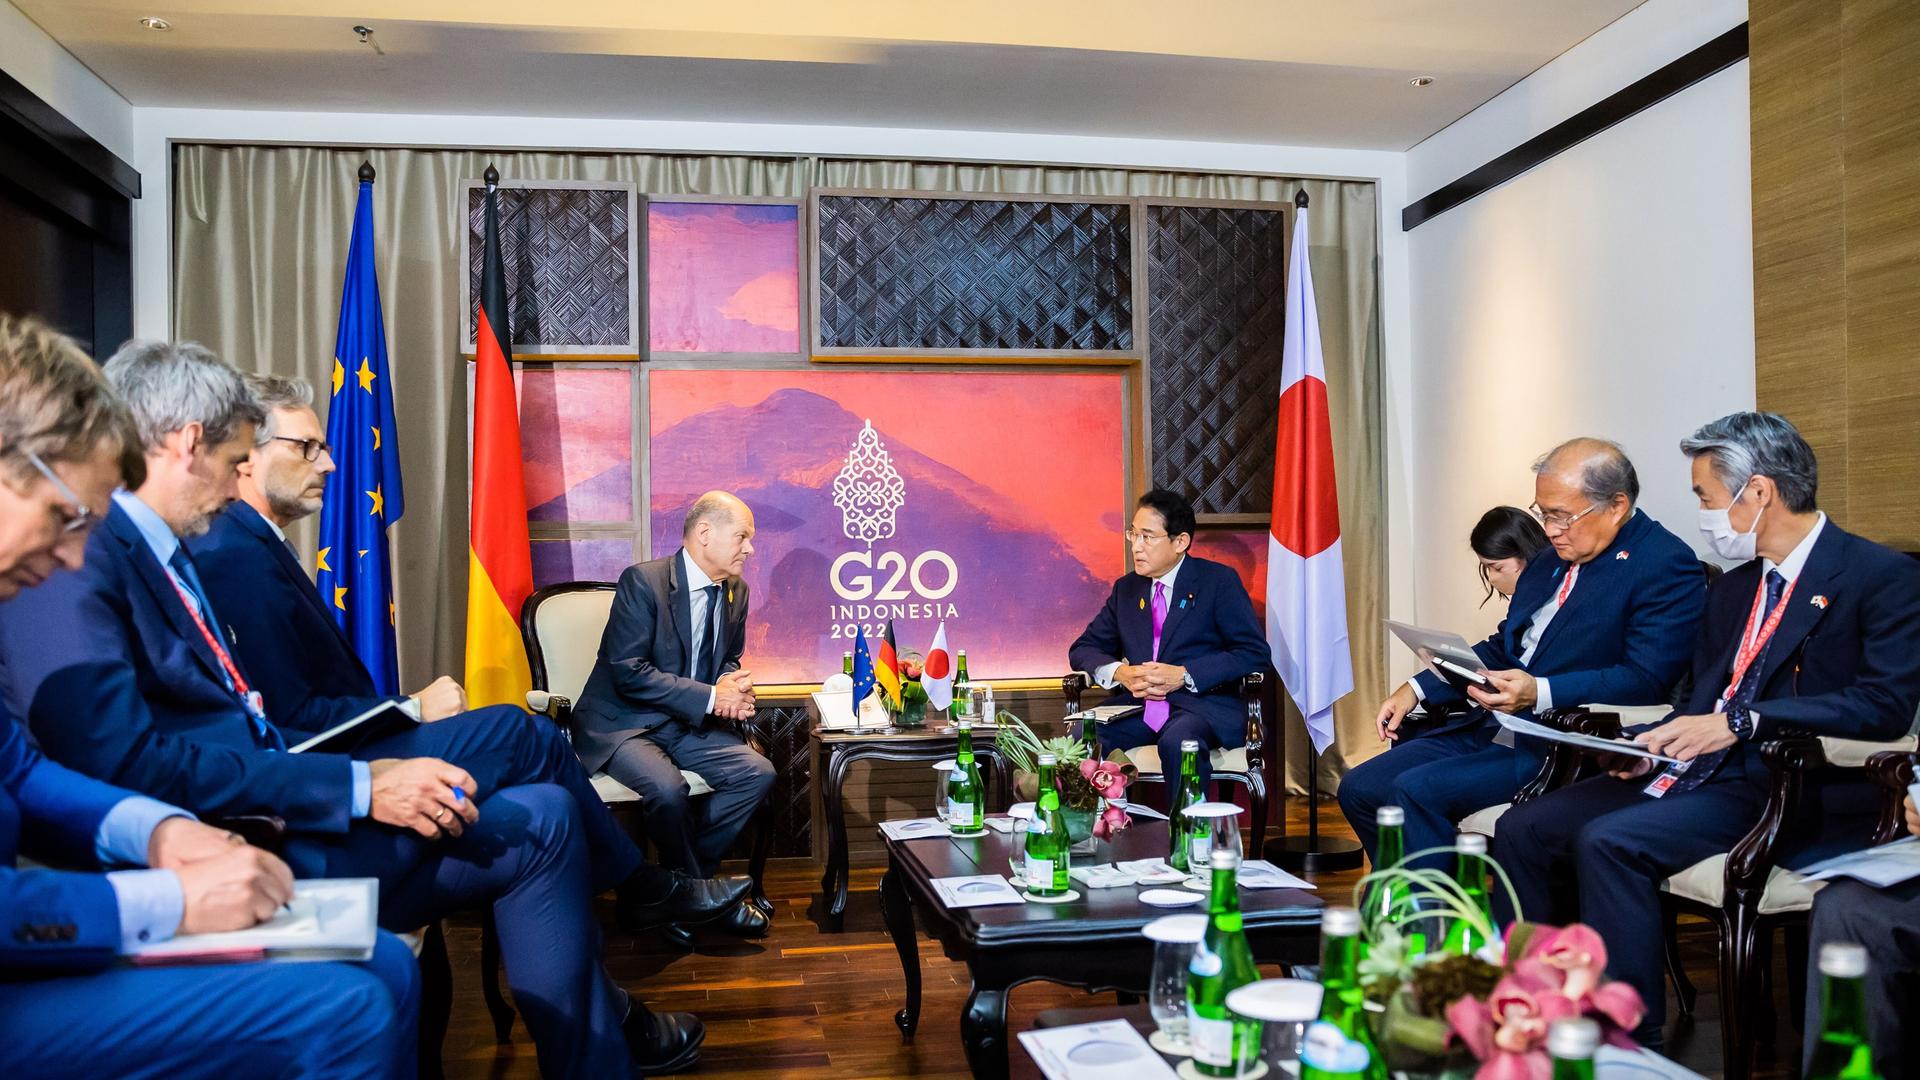 Bundeskanzler Olaf Scholz (SPD, vorne l) und Fumio Kishida (vorne r), Premierminister von Japan, treffen sich zu einem bilateralen Gespräch beim G20-Gipfel. Die Gruppe der G20, der stärksten Industrienationen und aufstrebenden Volkswirtschaften, kommt für zwei Tage auf der indonesischen Insel Bali zusammen.